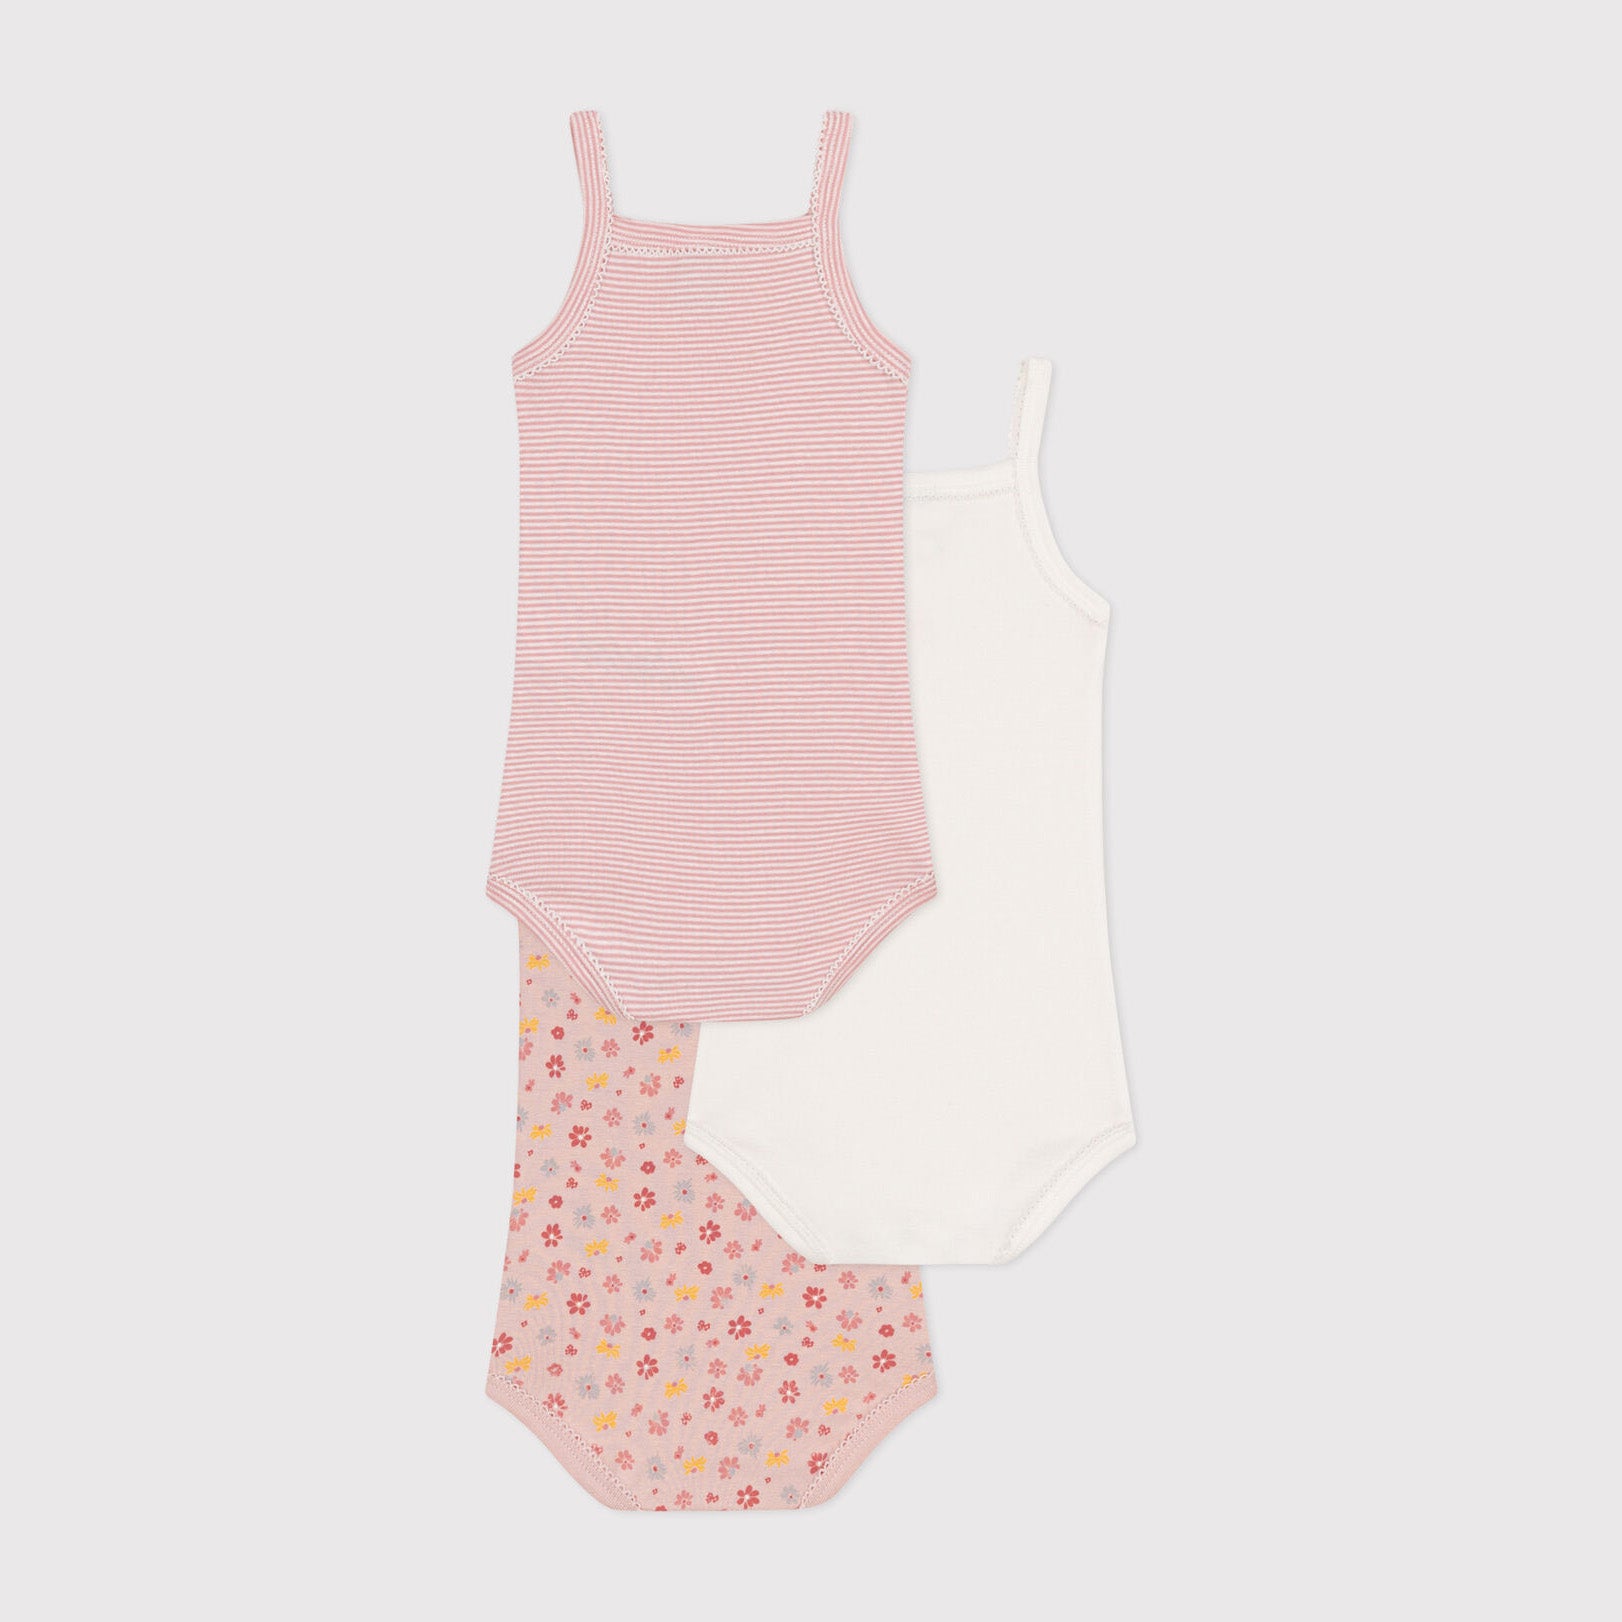 Baby Girls Pink Floral Cotton Babysuit Set(3 Pack)